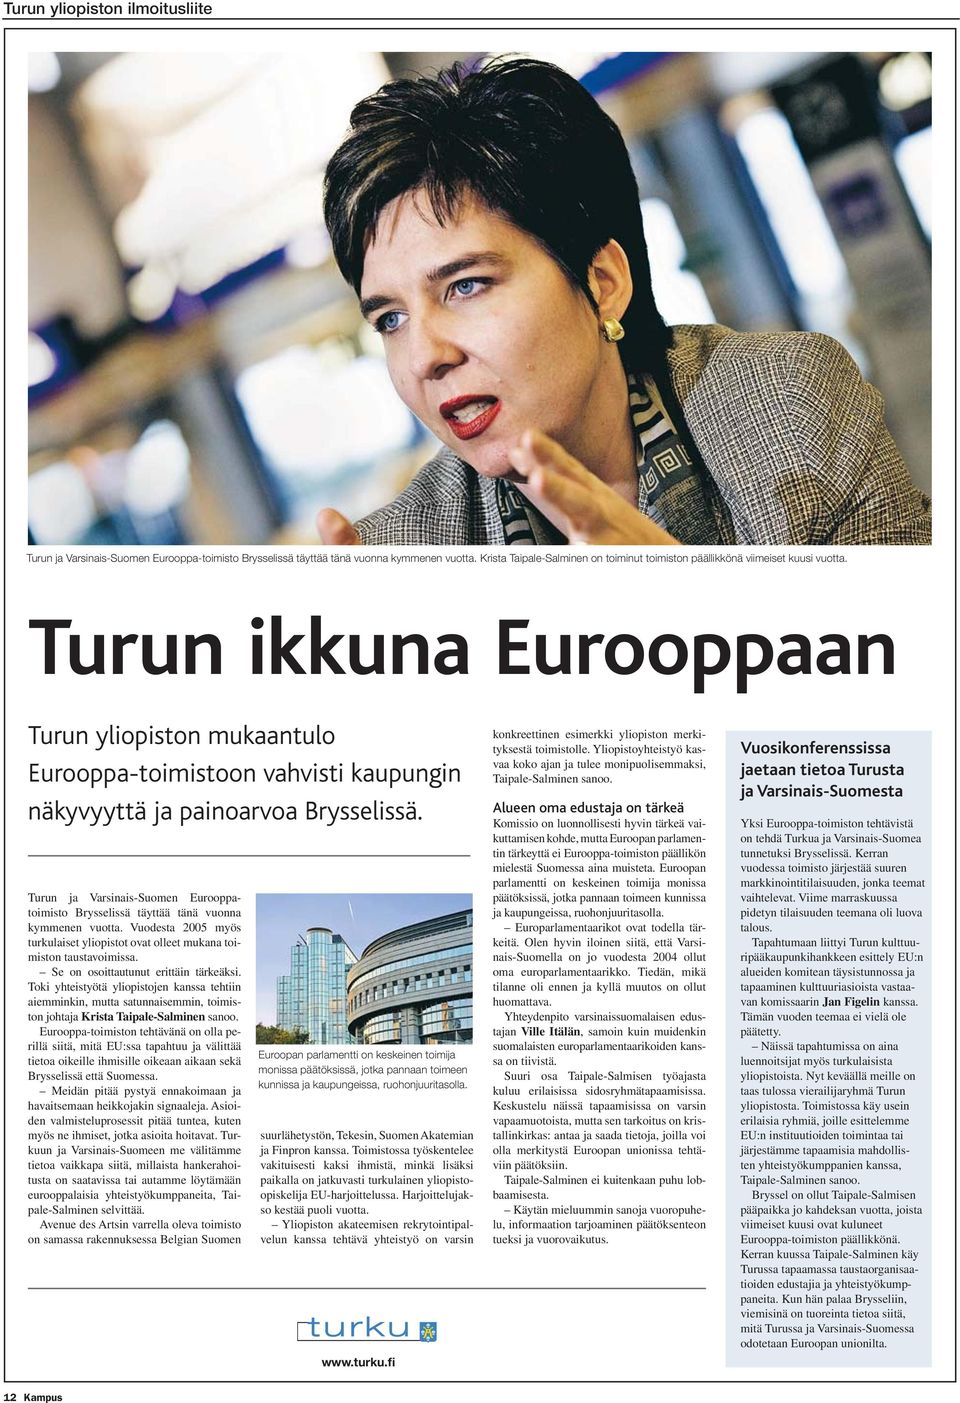 Turun ja Varsinais-Suomen Eurooppatoimisto Brysselissä täyttää tänä vuonna kymmenen vuotta. Vuodesta 2005 myös turkulaiset yliopistot ovat olleet mukana toimiston taustavoimissa.